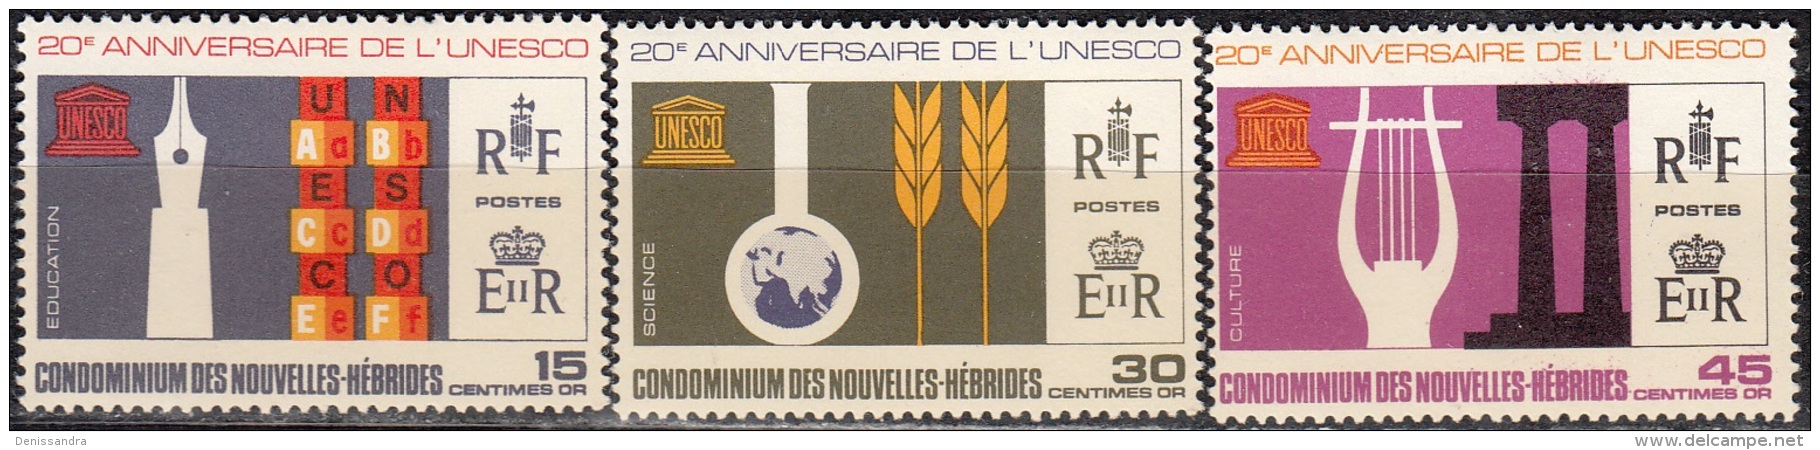 Nouvelles Hebrides 1966 Michel 251 - 253 Neuf ** Cote (2005) 6.00 Euro 20 Ans UNESCO - Ongebruikt